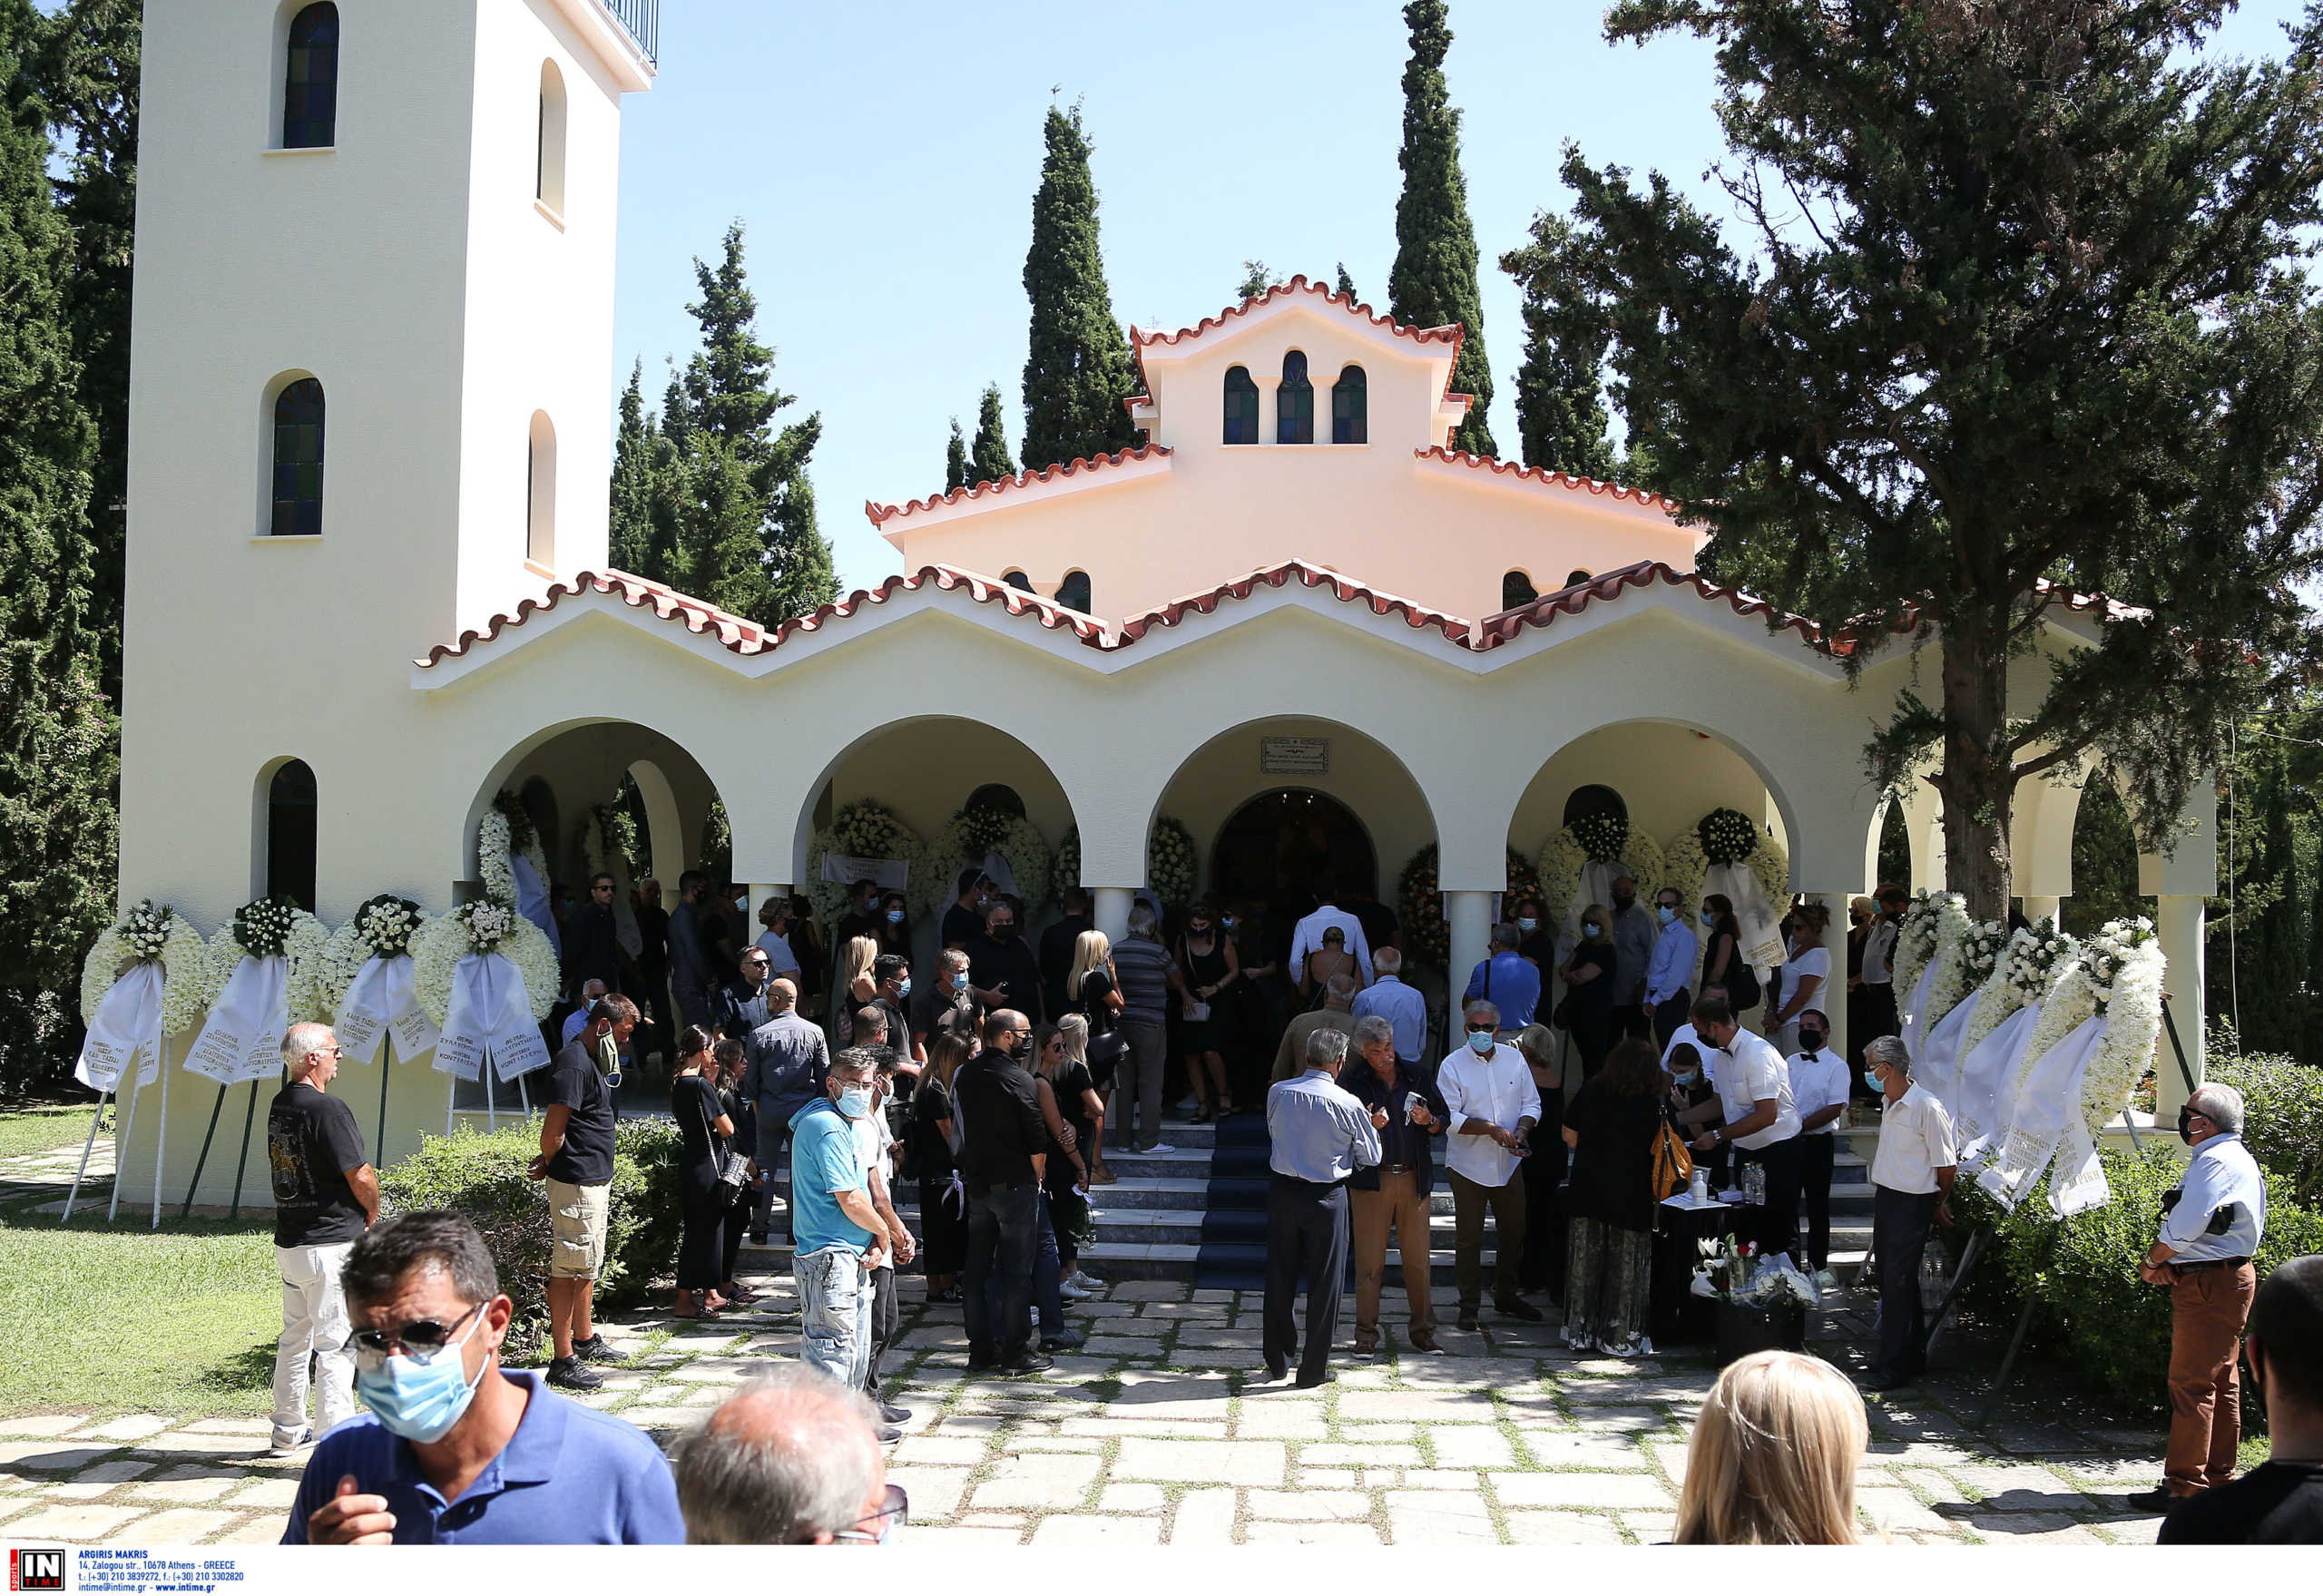 Αλέξης Σταϊκόπουλος: Συγκίνηση στο τελευταίο “αντίο” του παλαίμαχου πολίστα (pics)